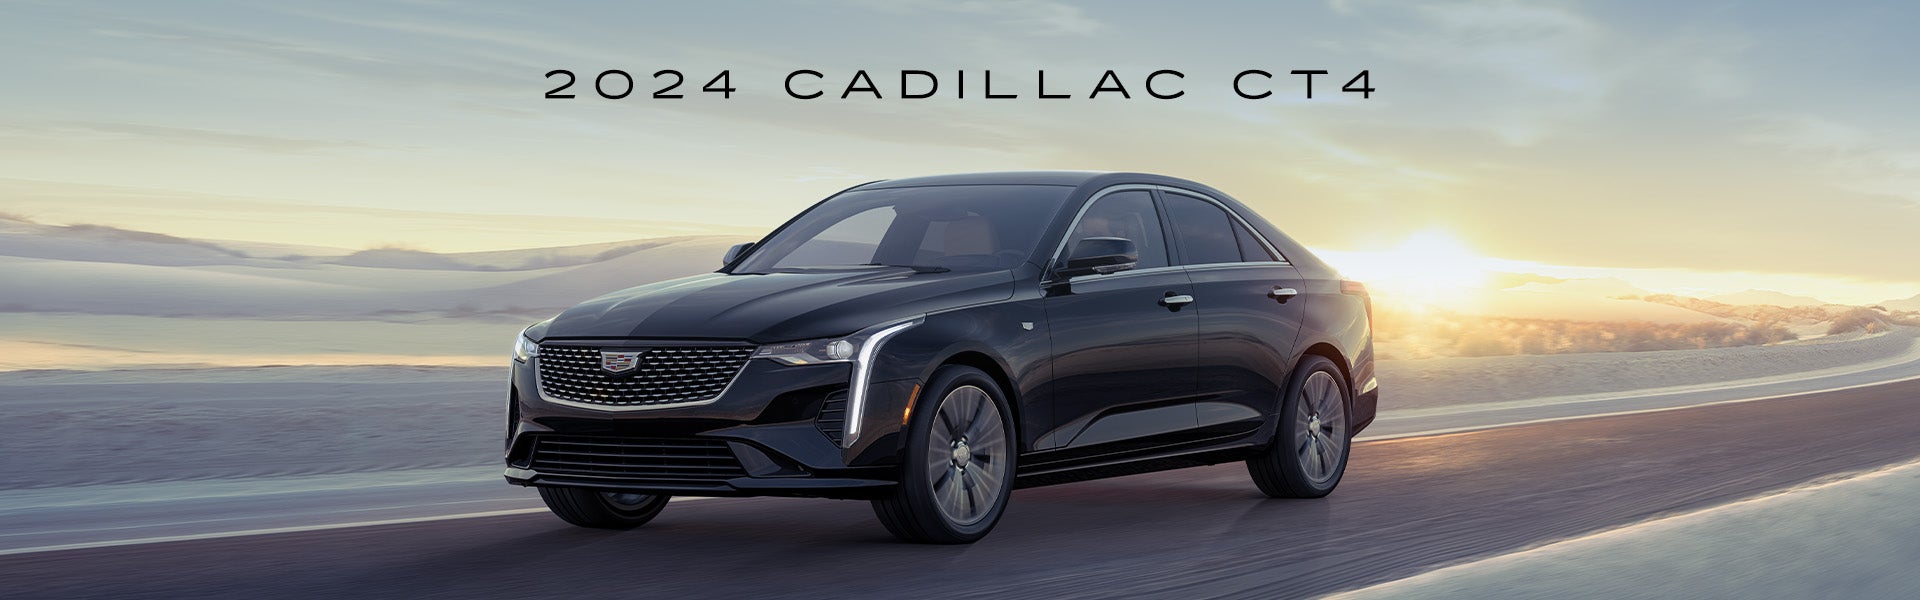 2024 Cadillac CT4